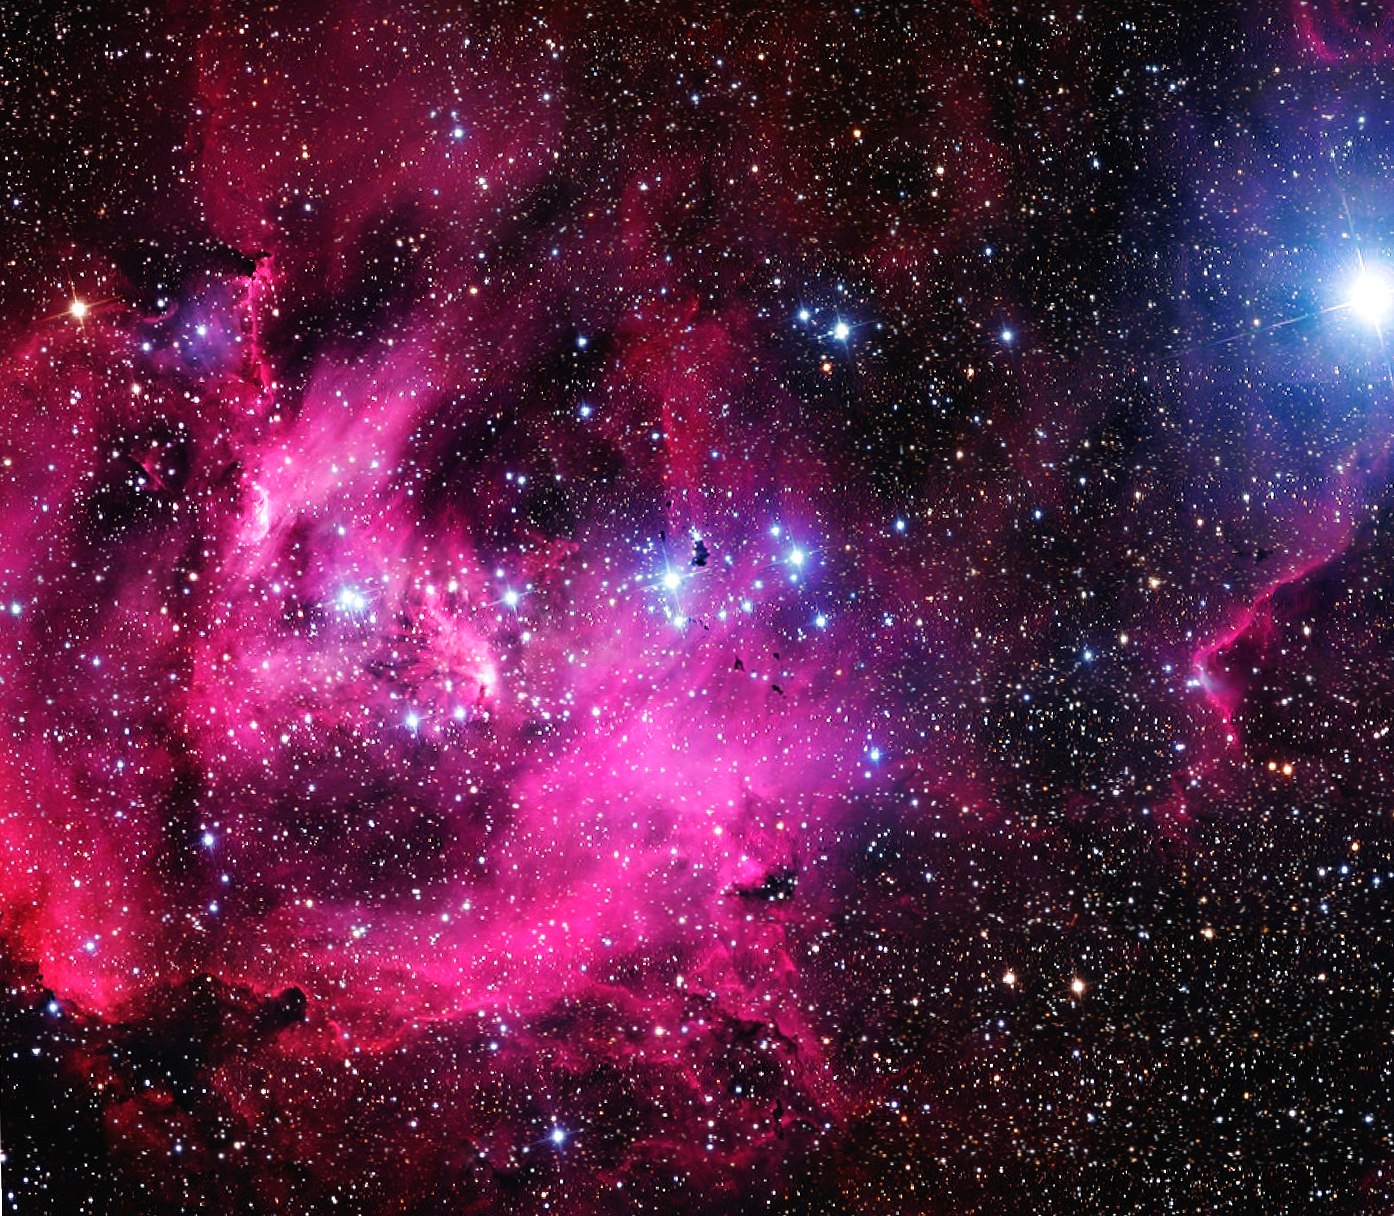 Galaxy Nebula at 1152 x 864 size wallpapers HD quality